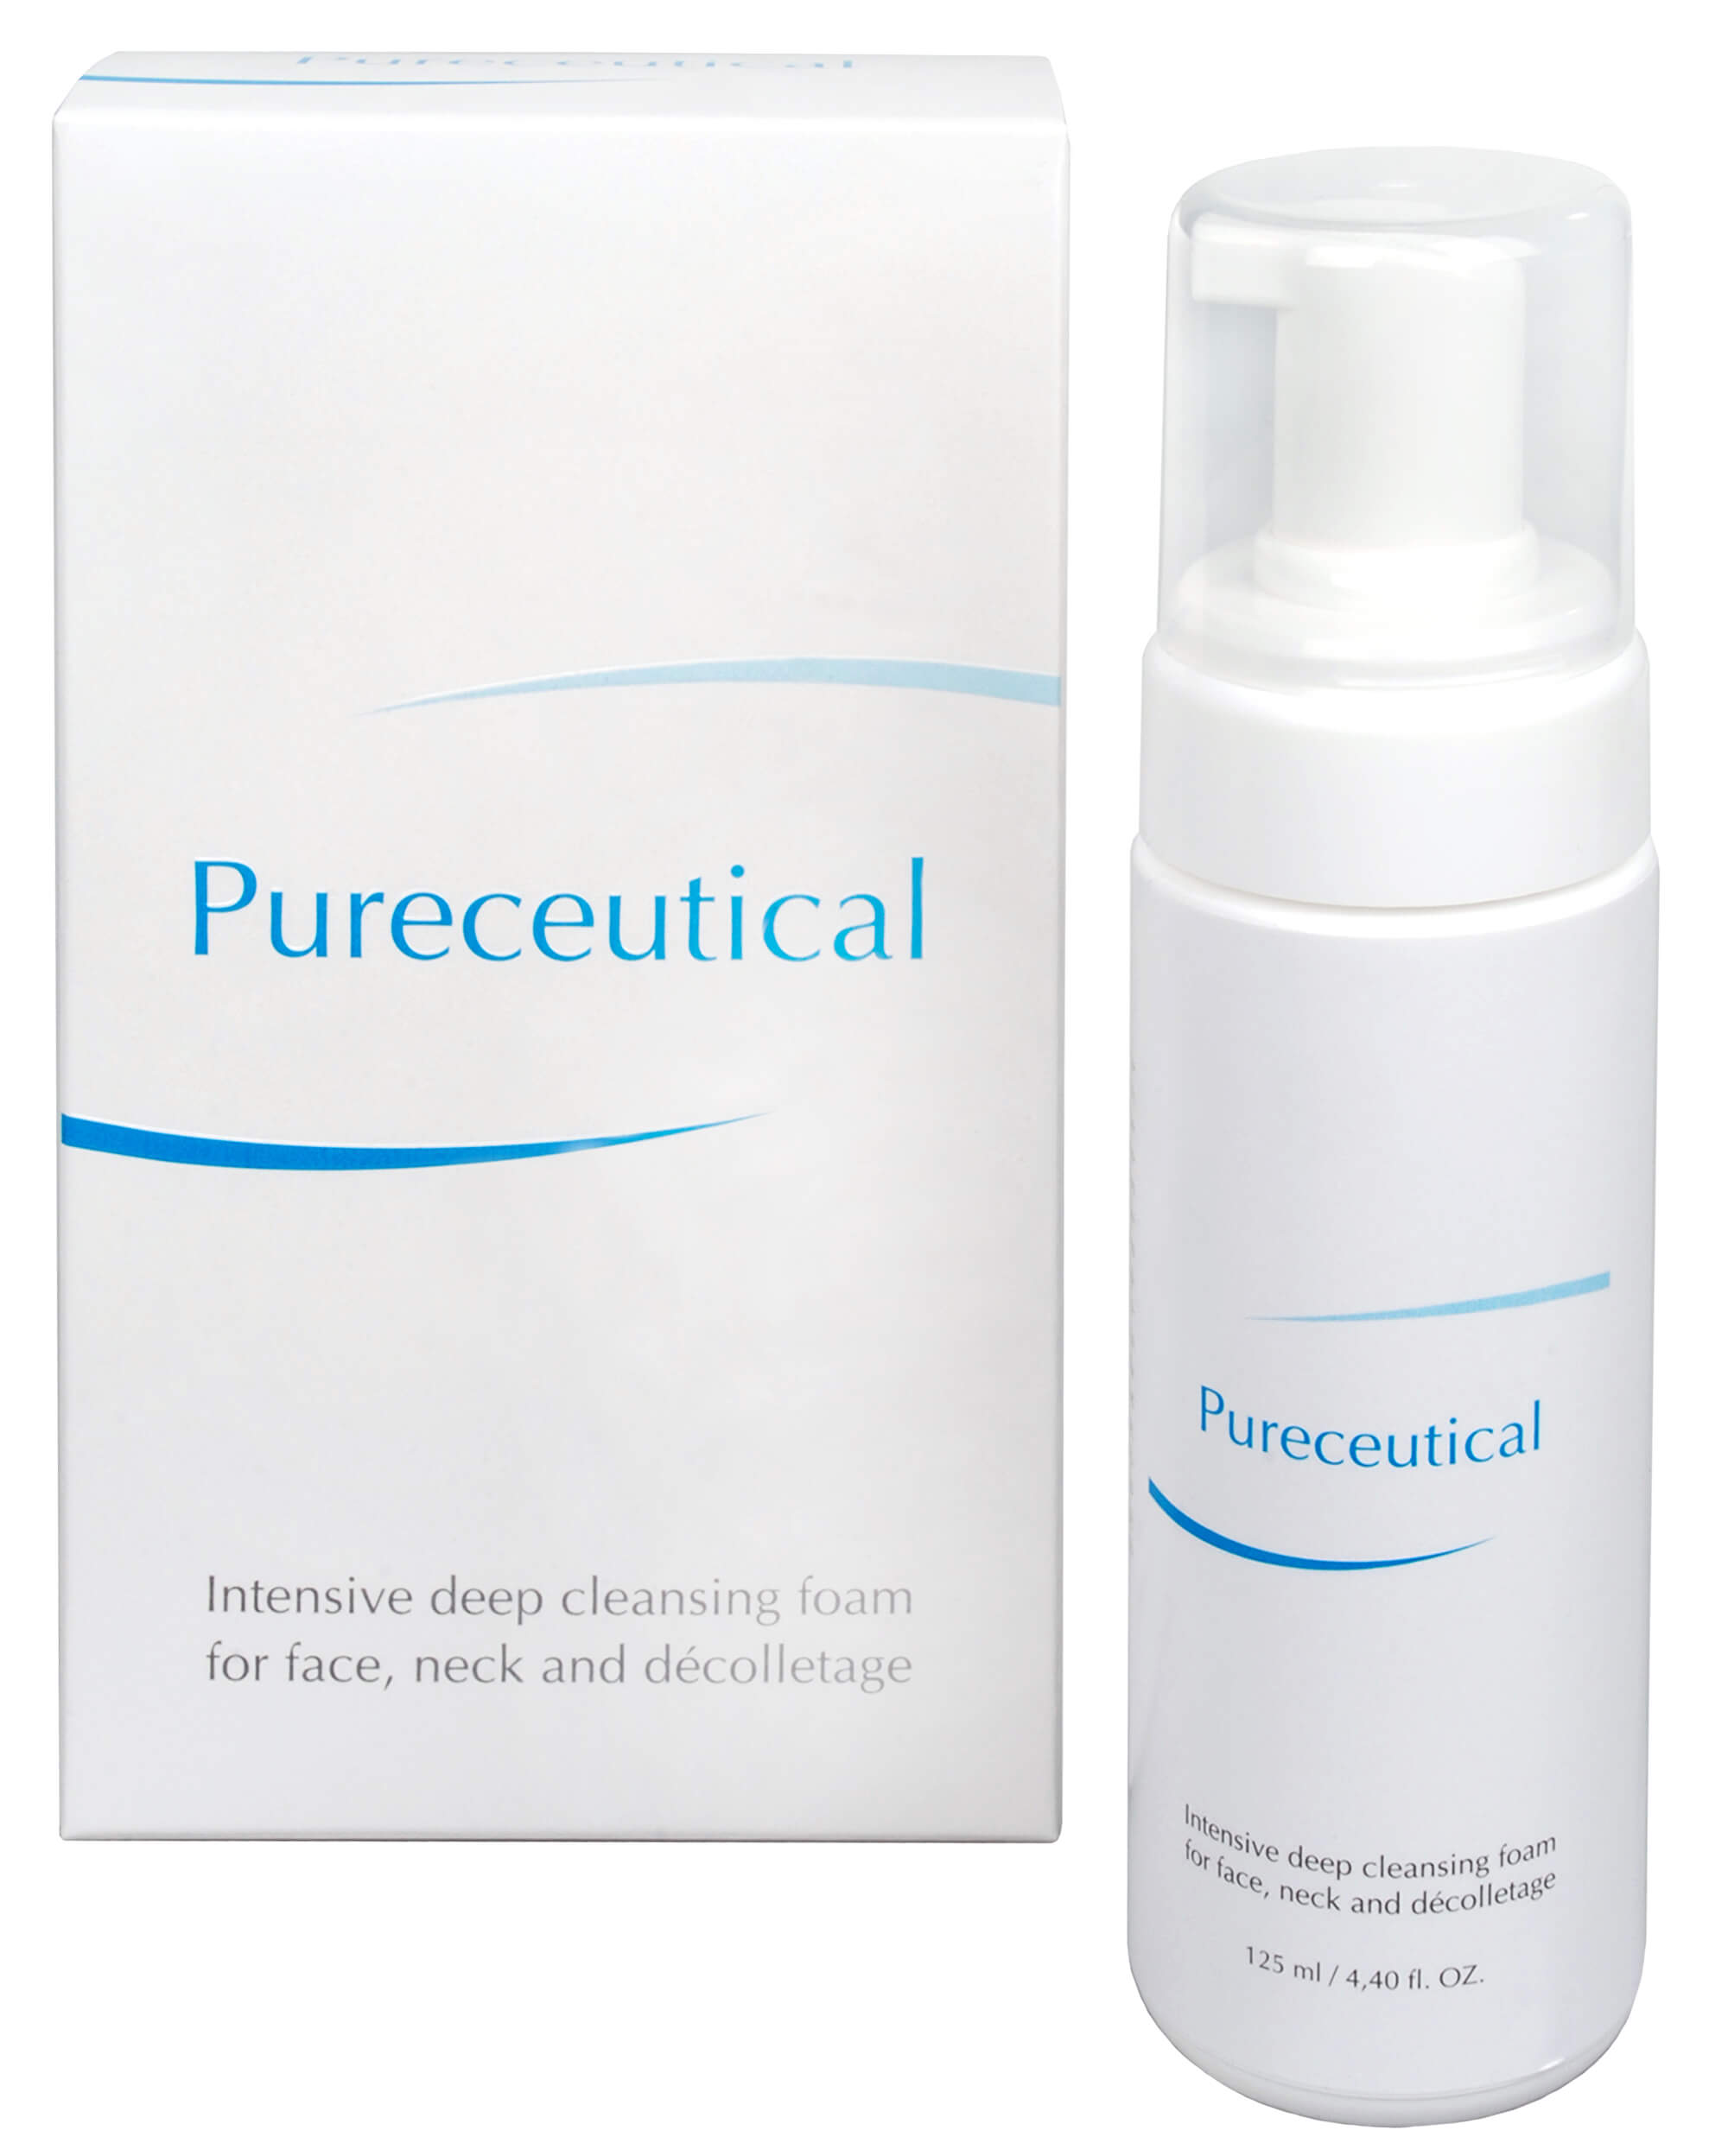 Zobrazit detail výrobku Fytofontana Pureceutical - intenzivní hloubková čisticí pěna na tvář, krk a dekolt 125 ml + 2 měsíce na vrácení zboží